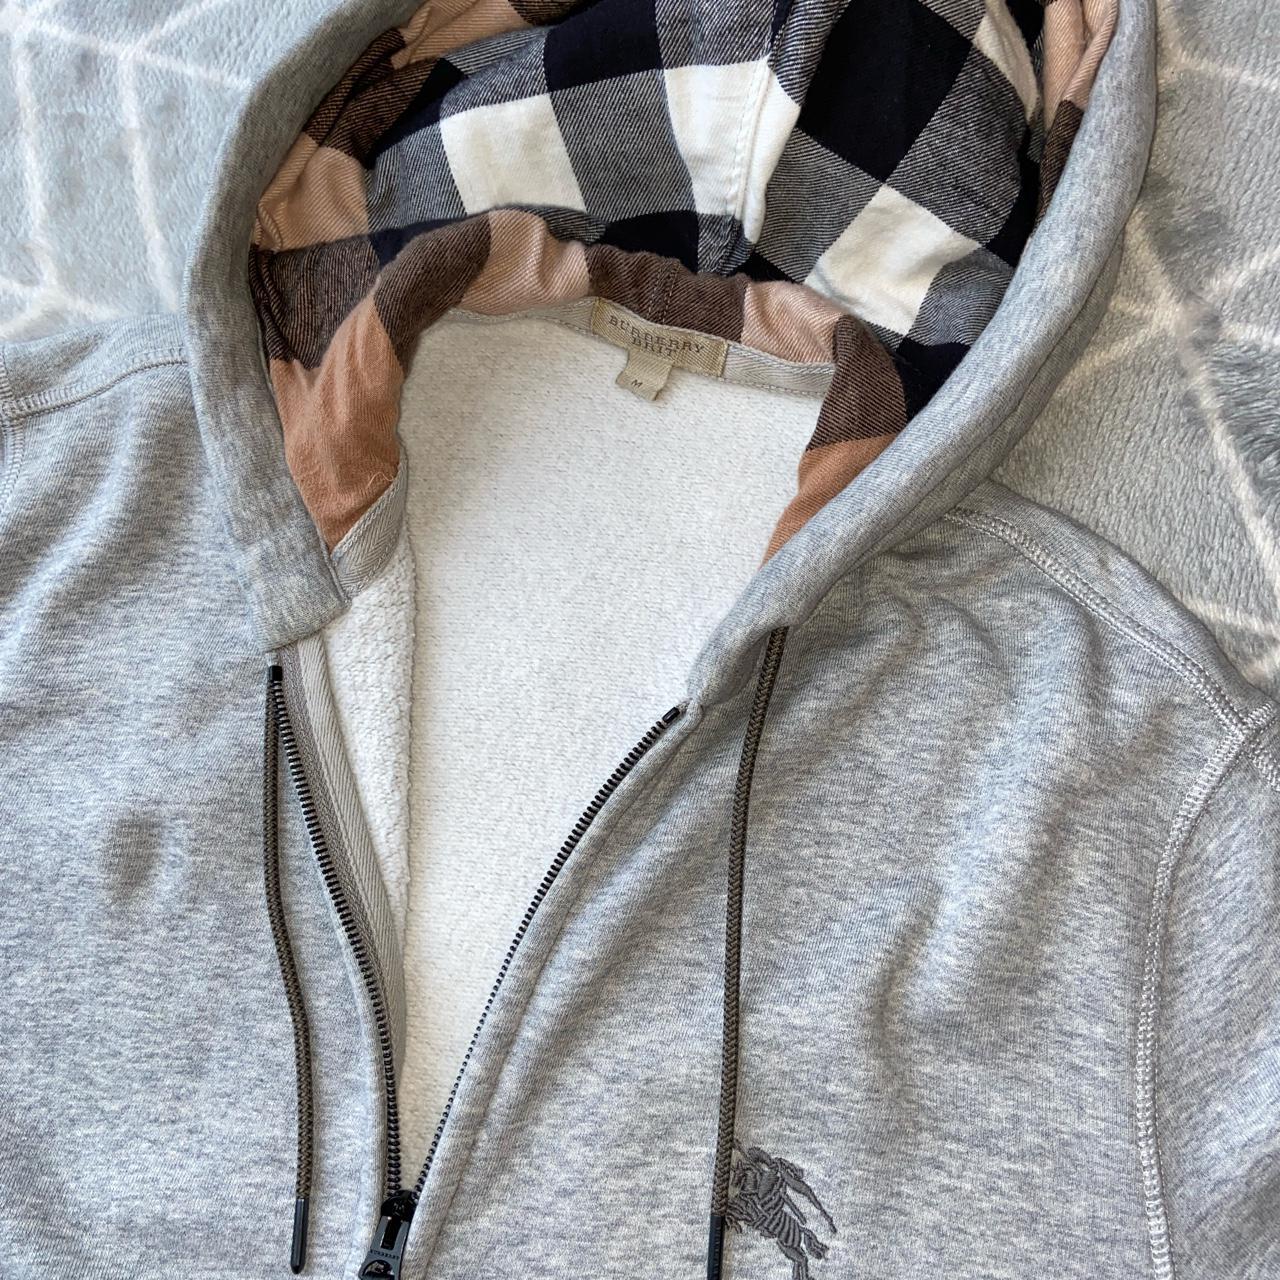 Product Image 2 - Burberry Hoodie - Medium

Burberry hoodie